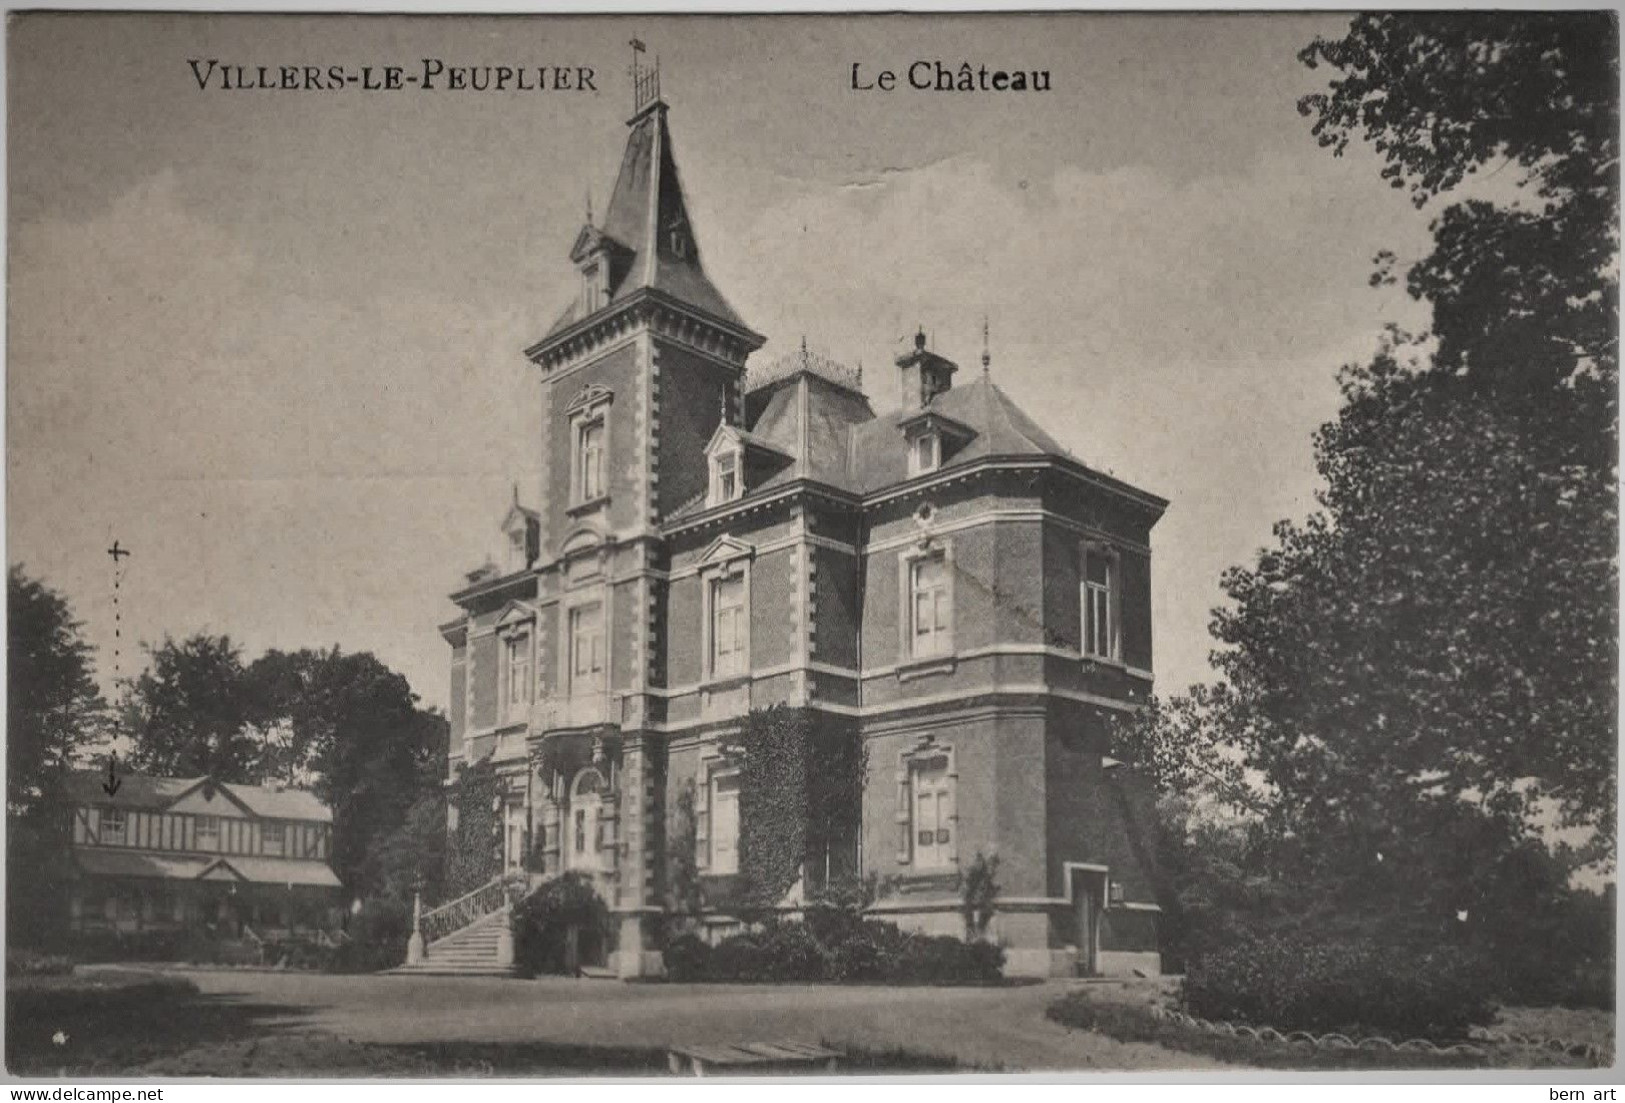 CPA. Villiers-le-Peuplier "Le Château". N° Sans. Edit.: Emile Dumont. Editeur, Liège. - Hannut